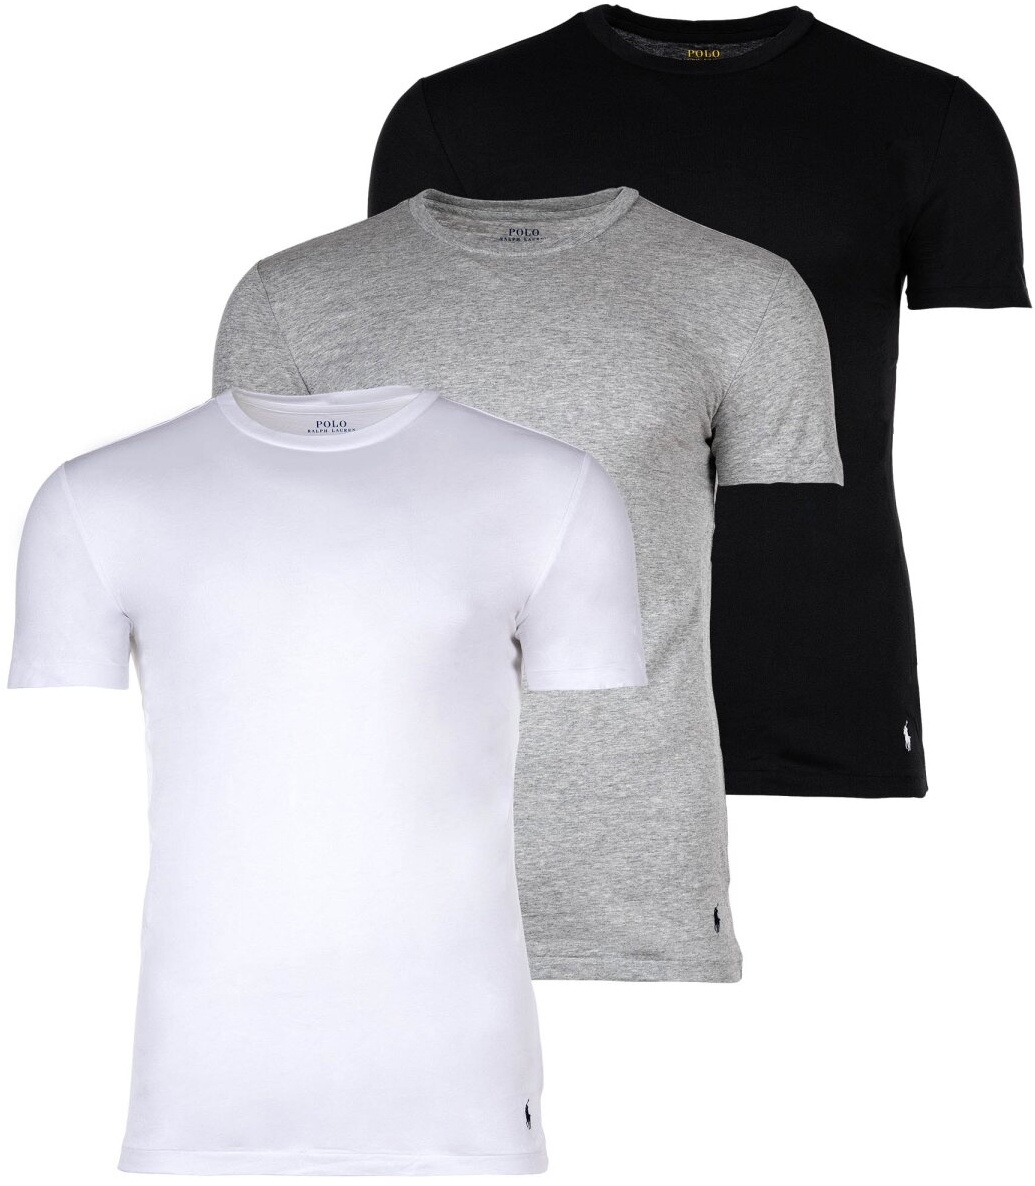 POLO RALPH LAUREN Herren T-Shirts, 3er Pack - CREW 3-PACK-CREW UNDERSHIRT, Rundhals, Baumwolle Weiß/Grau/Schwarz XL